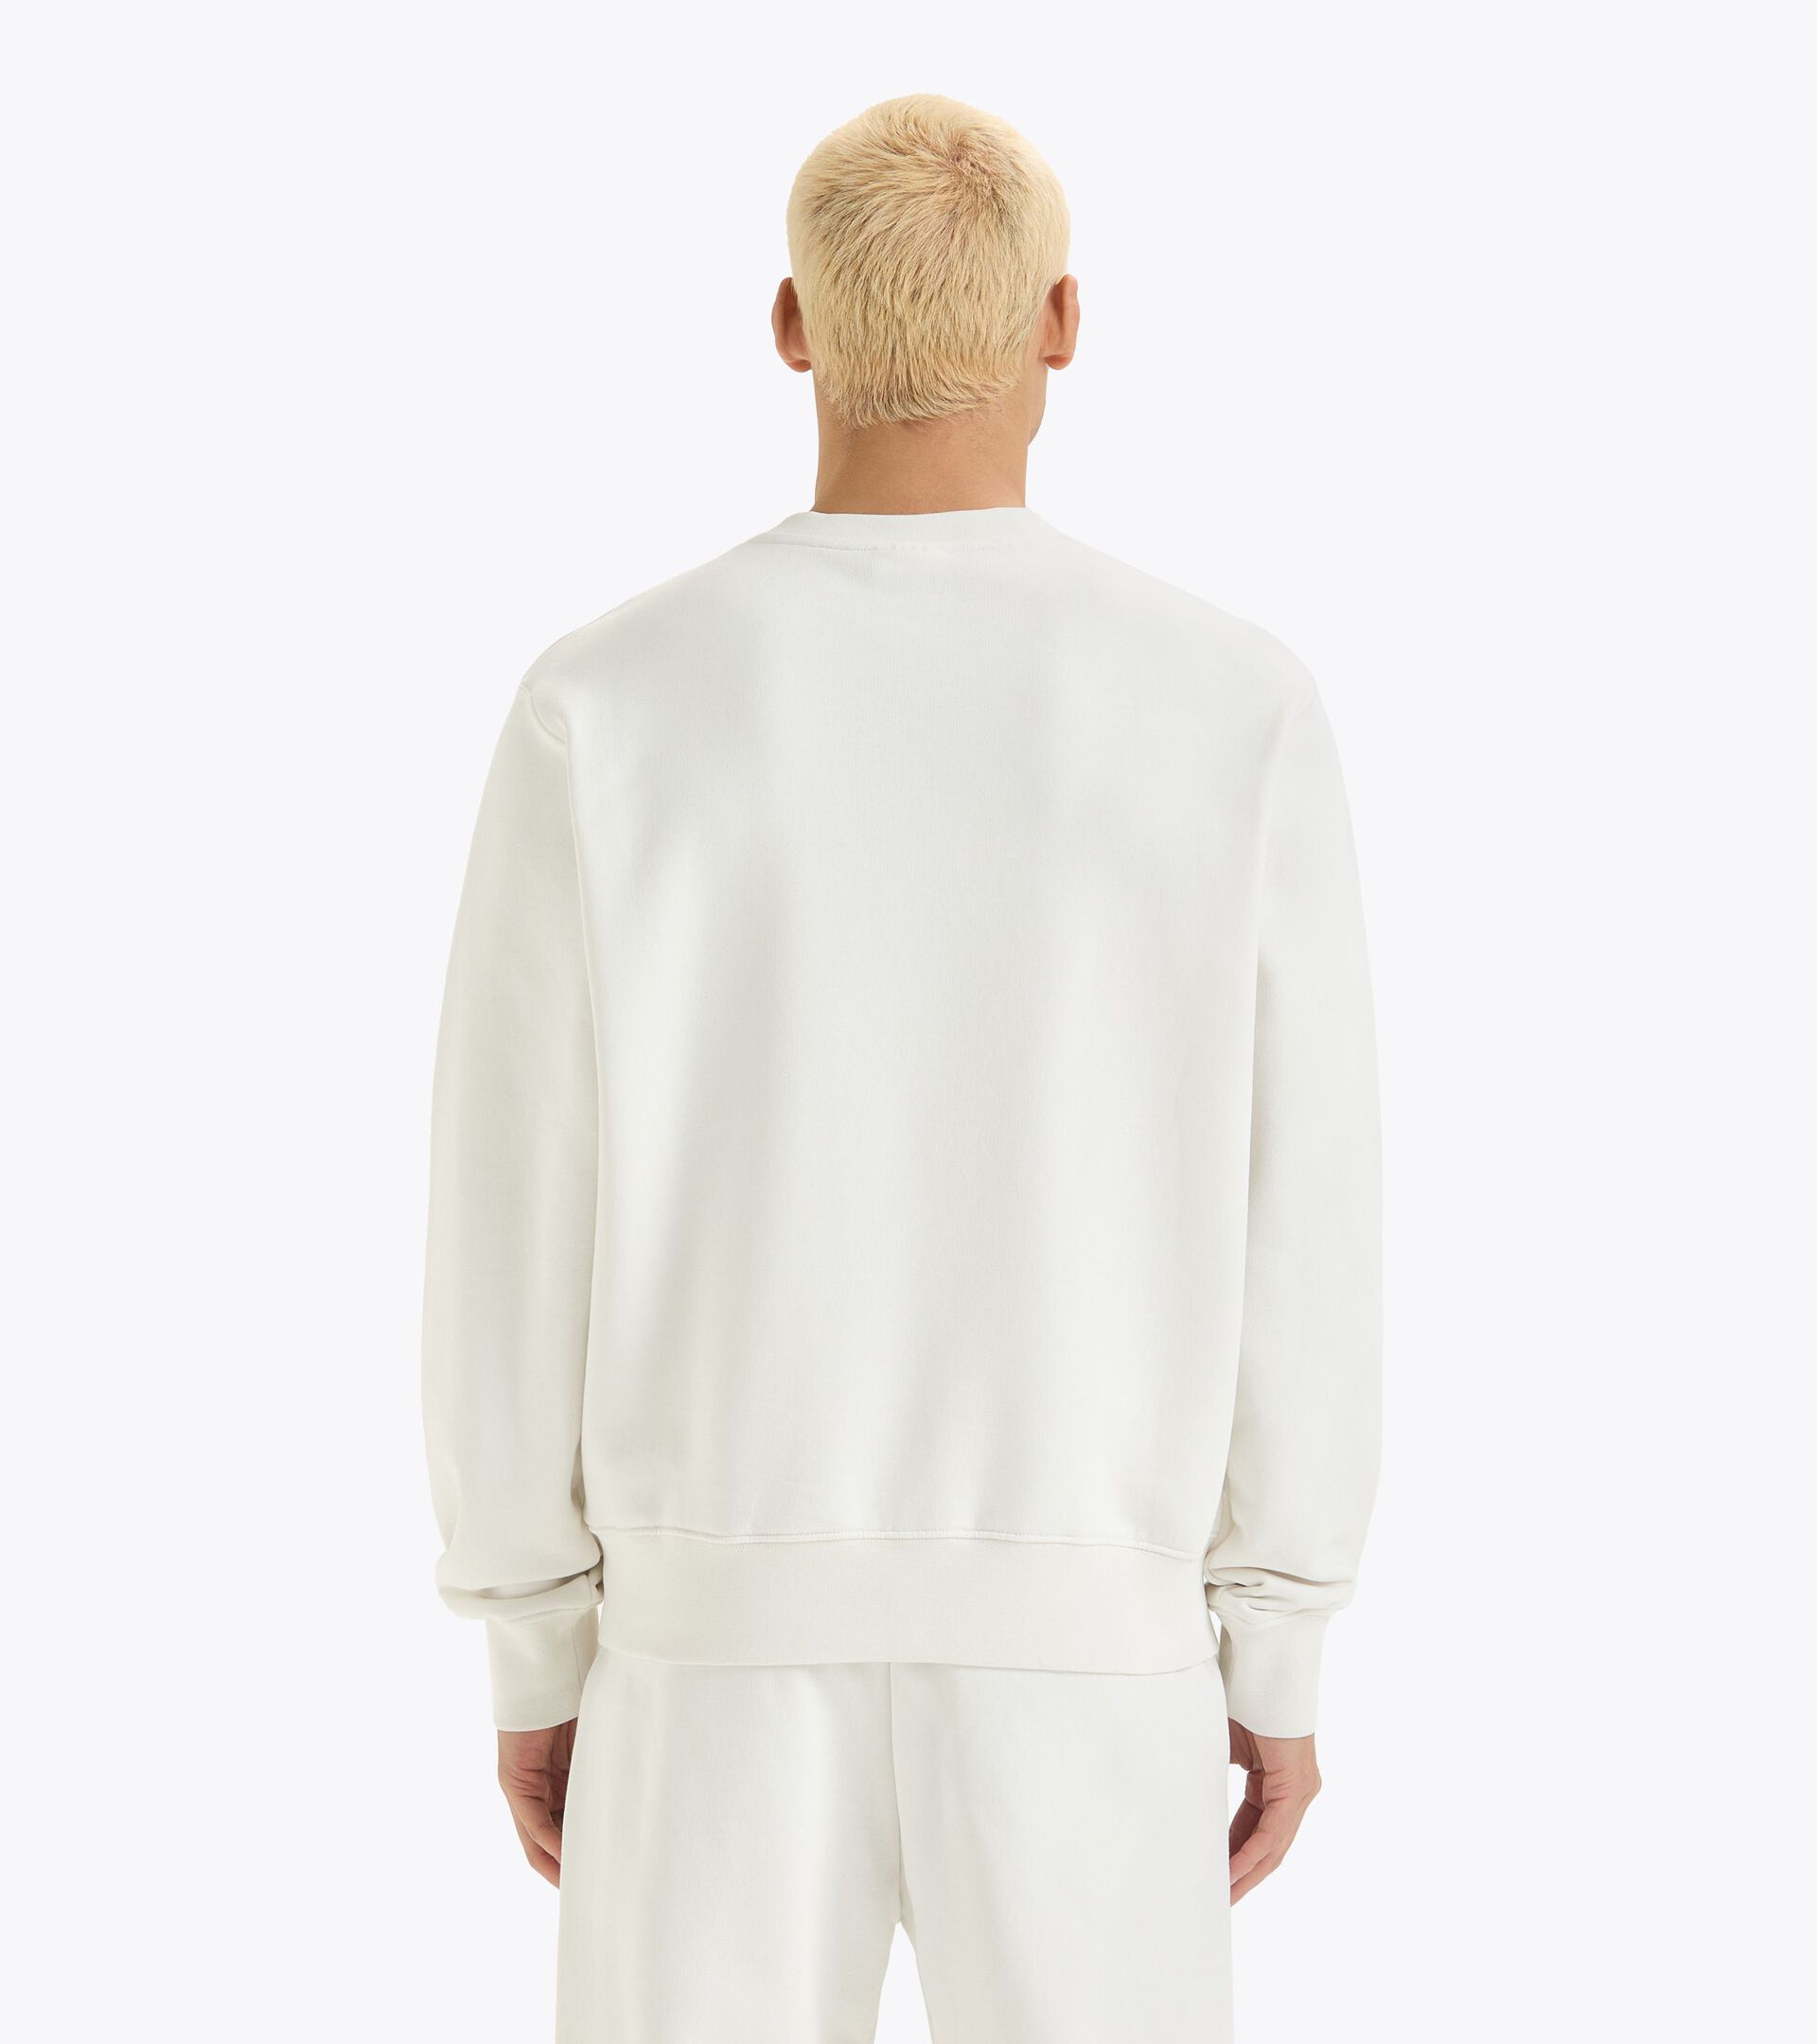 Crewneck sweatshirt - Gender Neutral
 SWEATSHIRT CREW ATHL. LOGO WHITE MILK - Diadora